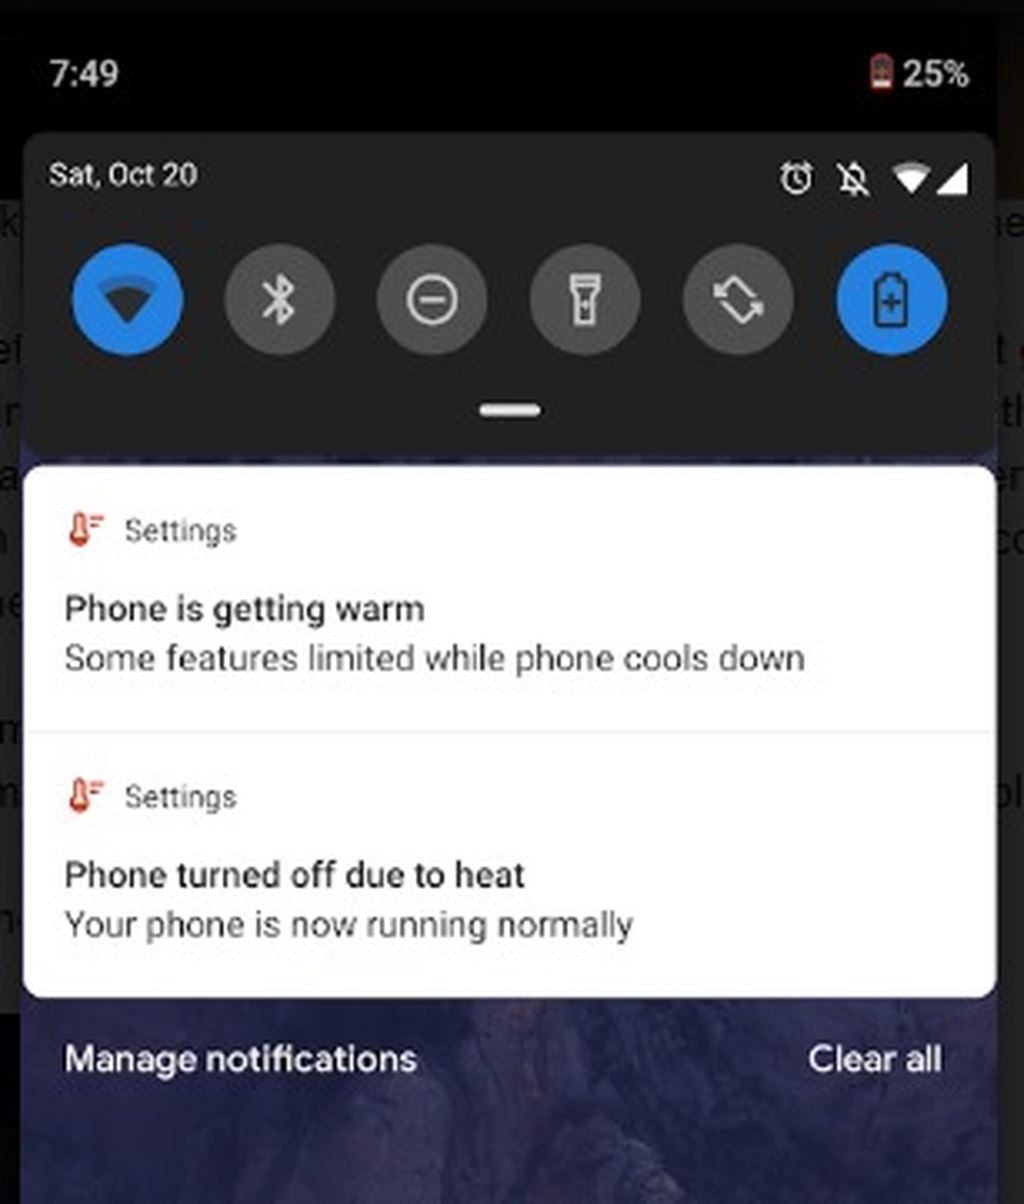 Google Pixel 3 bị lỗi sạc pin, tự tắt nguồn vì quá nóng ảnh 2